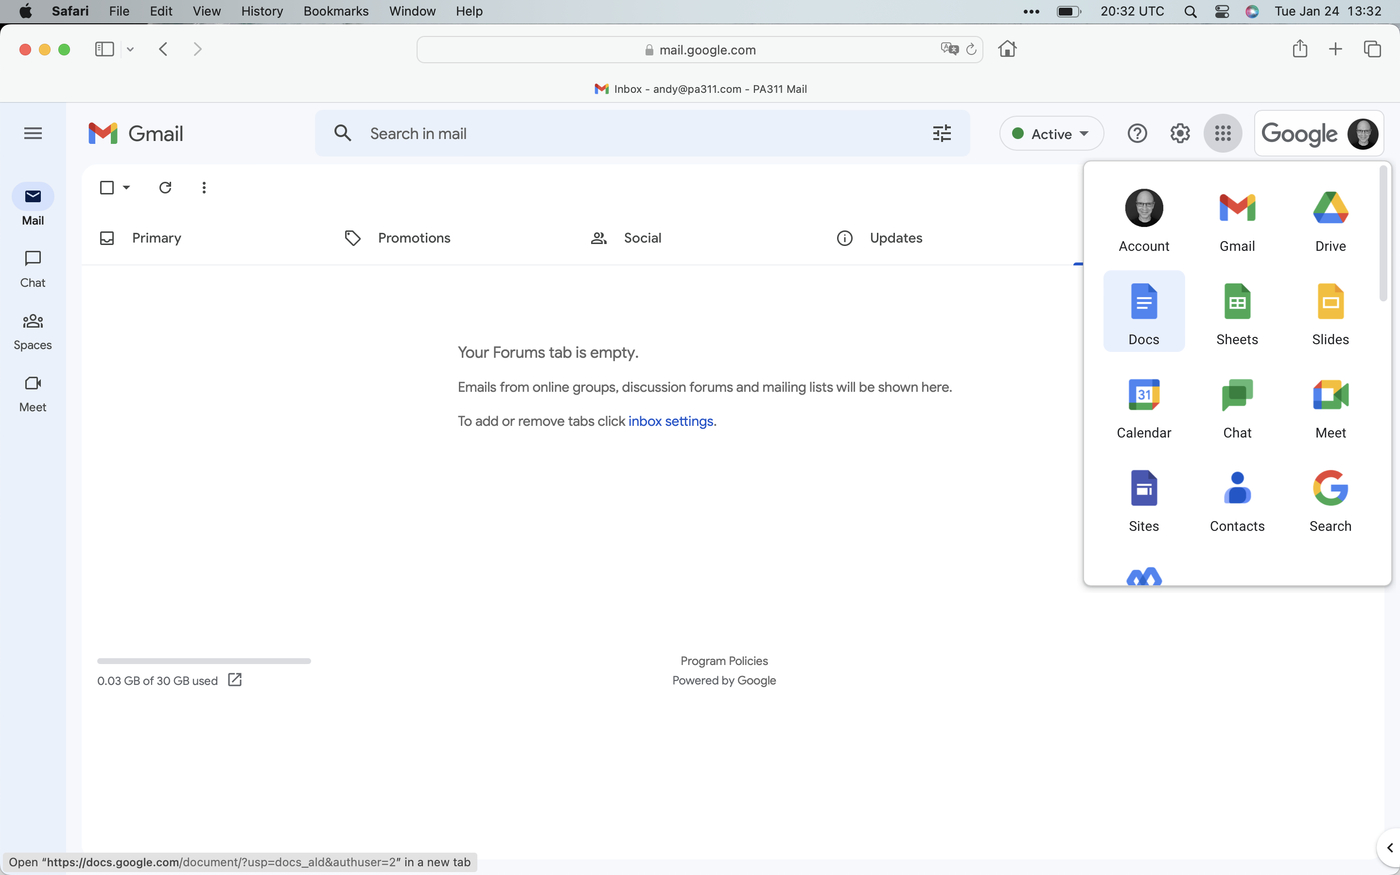 Google Applications menu open in Safari